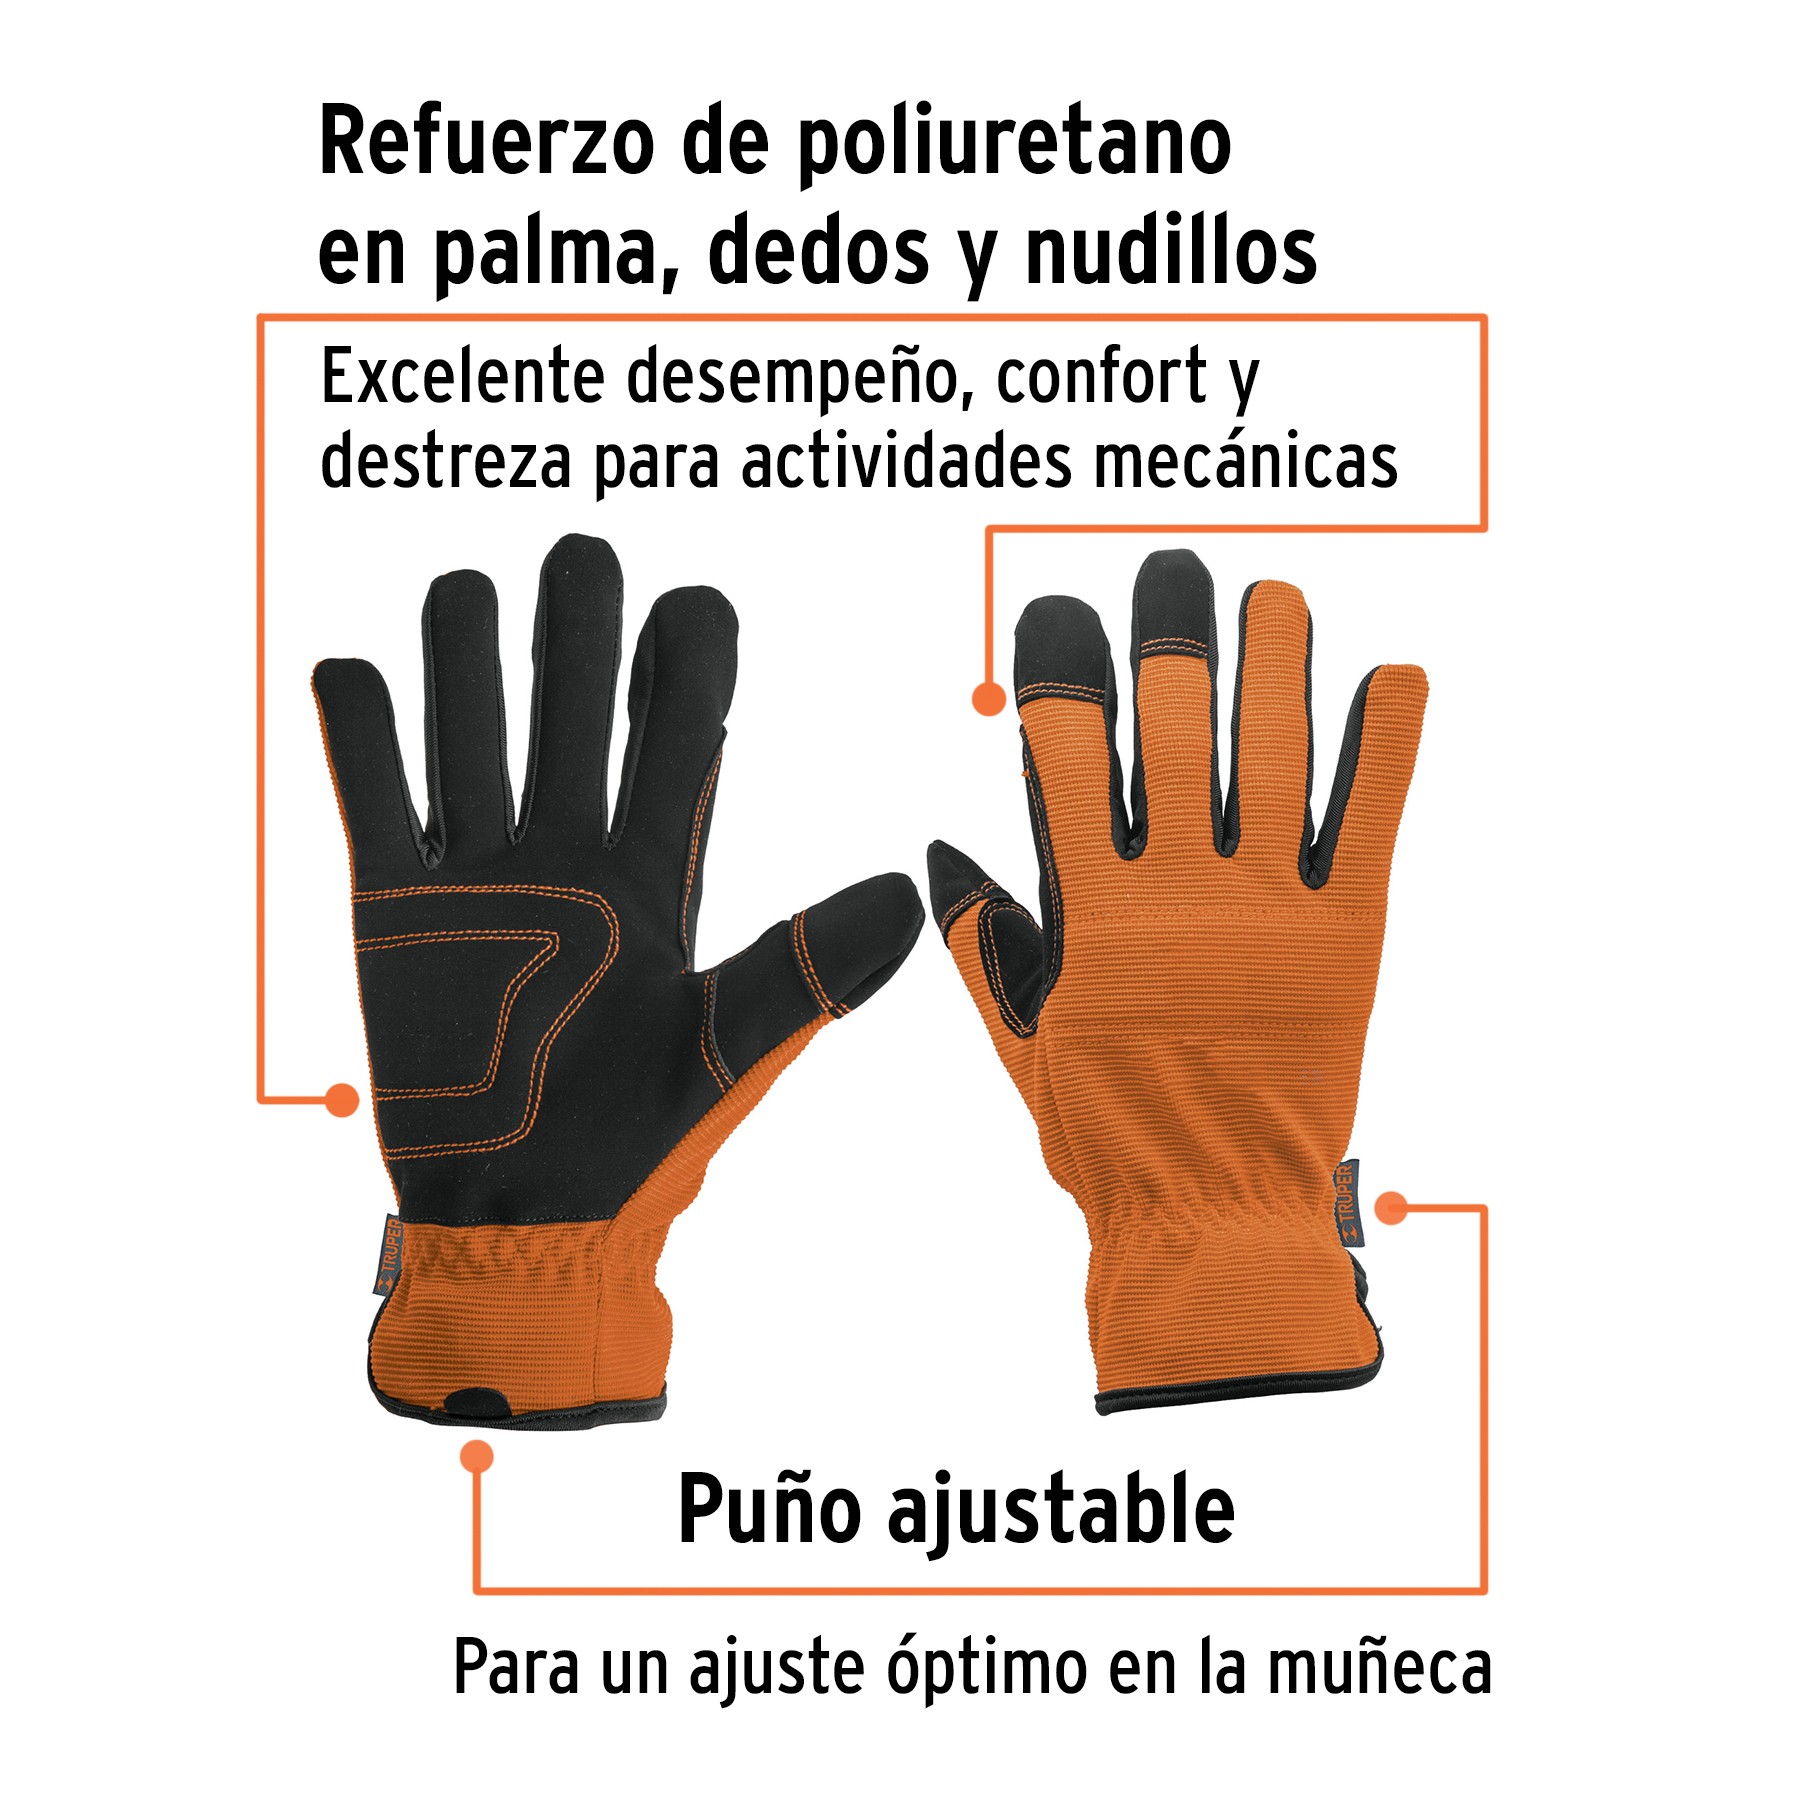 https://click.fixferreterias.com/media/product/457/guantes-para-mecanico-palma-reforzada-truper-f4a.jpg